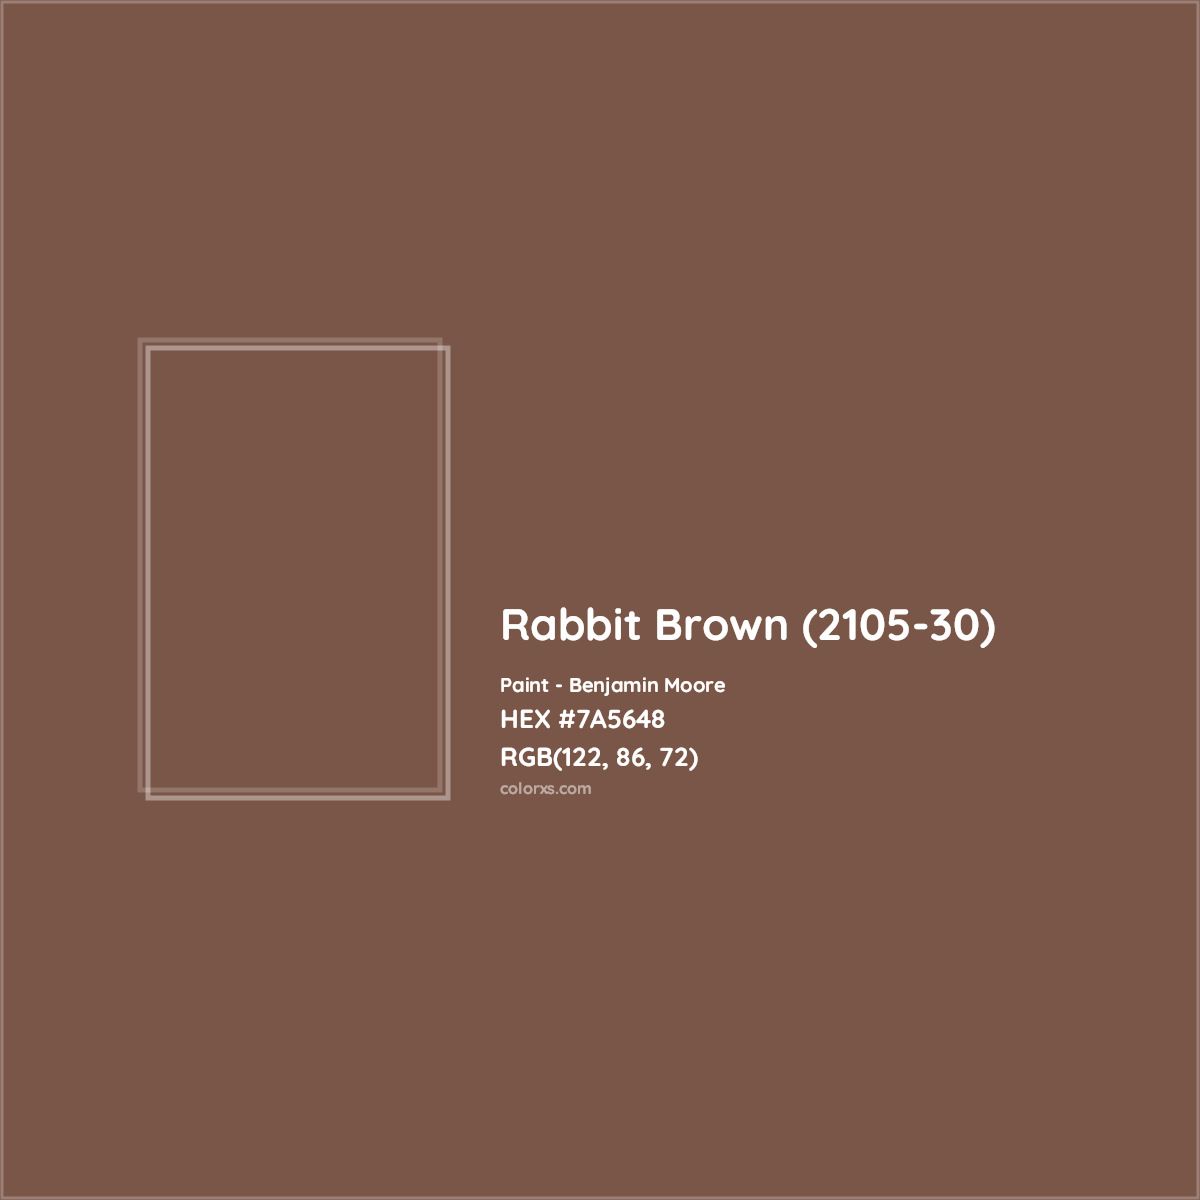 HEX #7A5648 Rabbit Brown (2105-30) Paint Benjamin Moore - Color Code